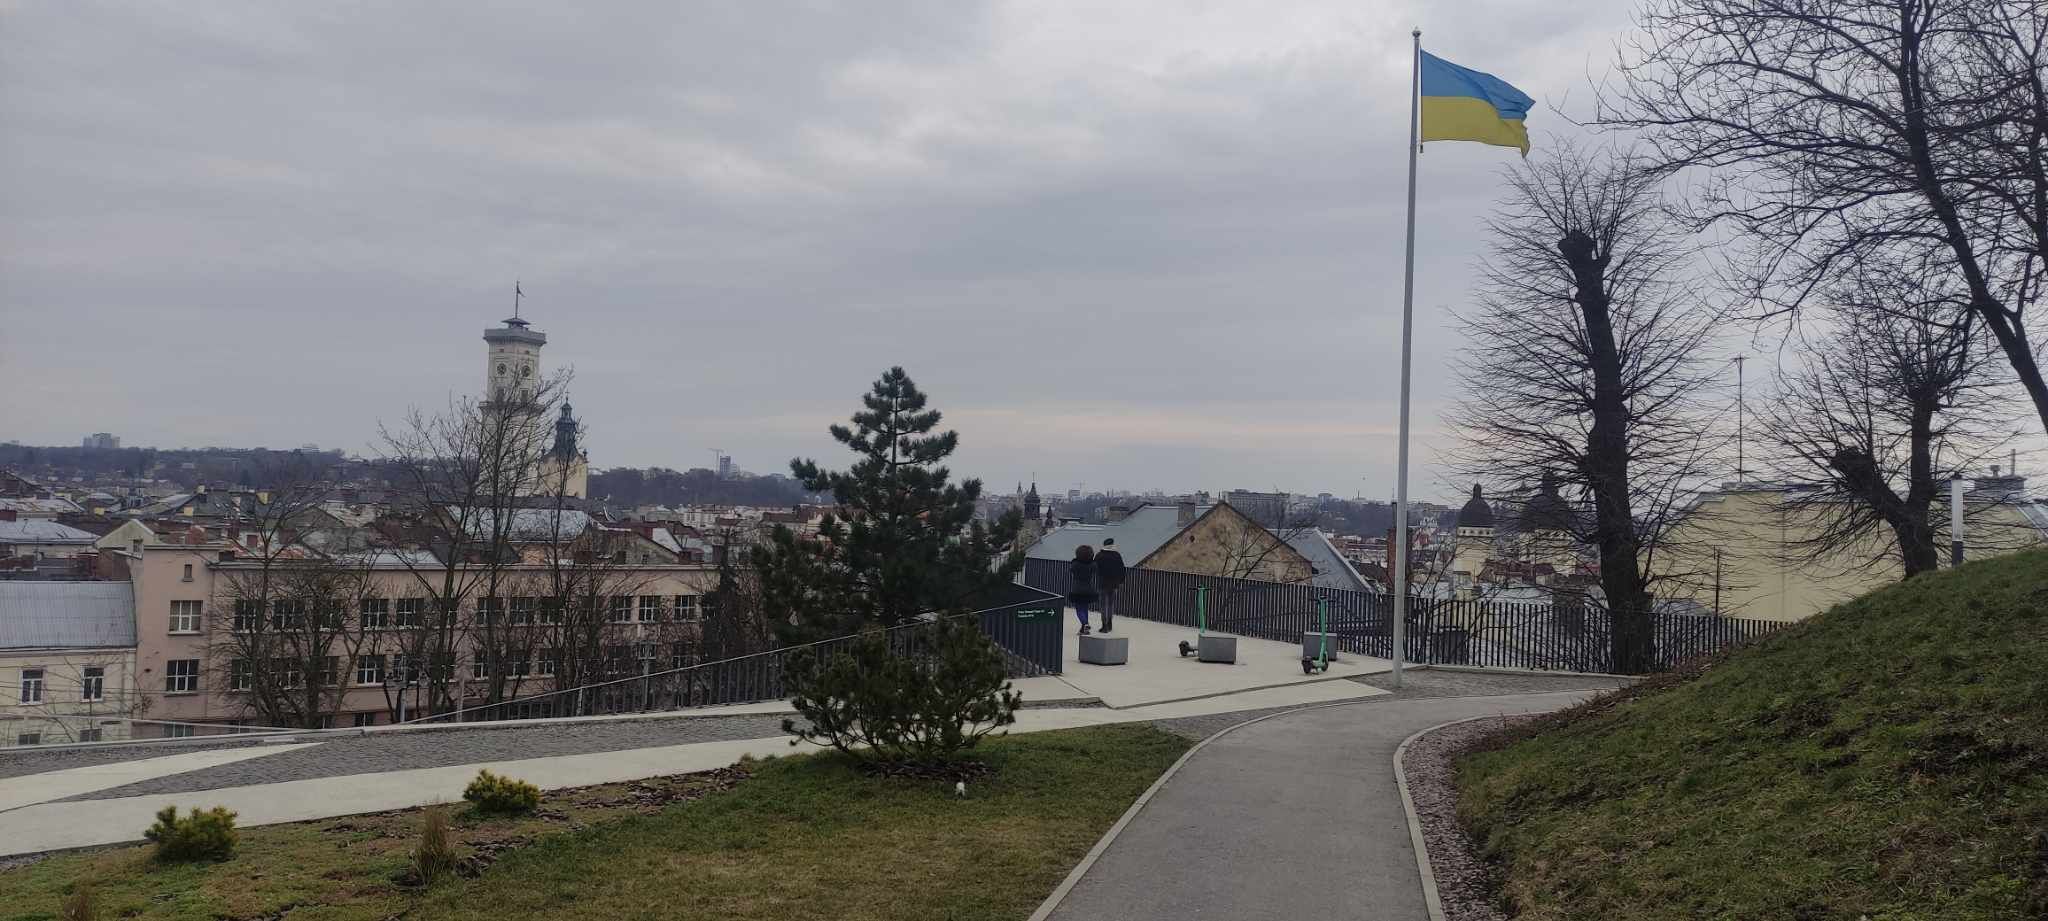 We Lwowie, jak i całej Ukrainie dumnie powiewa ukraińska flaga narodowa